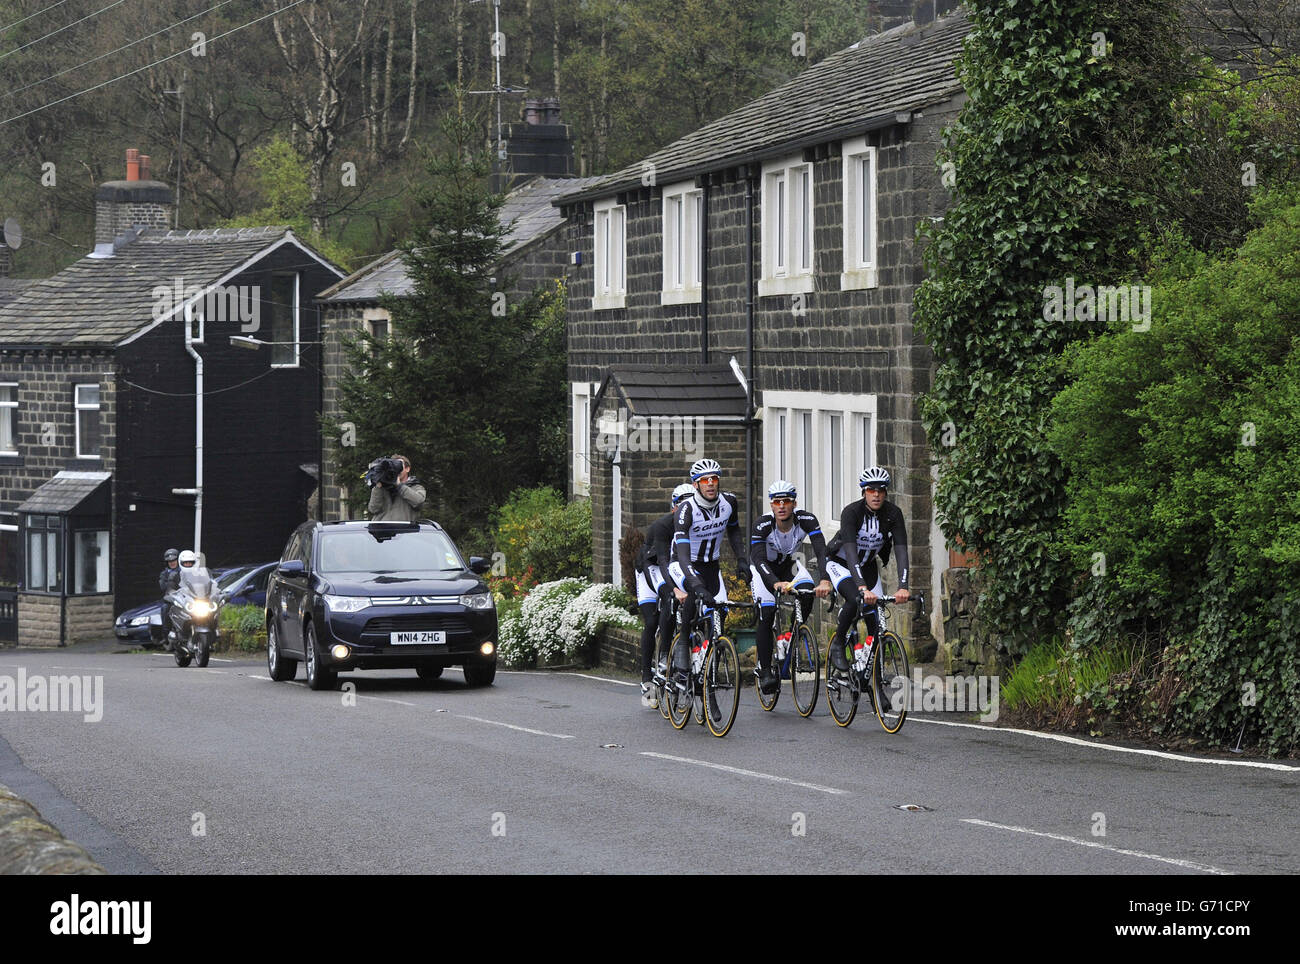 Fahrer des Giant Shimano Cycle Race Teams, darunter John Degenkolb und Marcel Kittel, fahren die Route der Tour de France Etappe 2, während sie vor ihrem Medientag in Leeds bei Regen und Nebel auf die Mooren über Cragg Vale klettern. Sie sind die ersten Teams der Tour de France, die kommen und sich die Eröffnungsphasen des Rennens in Yorkshire ansehen. Stockfoto